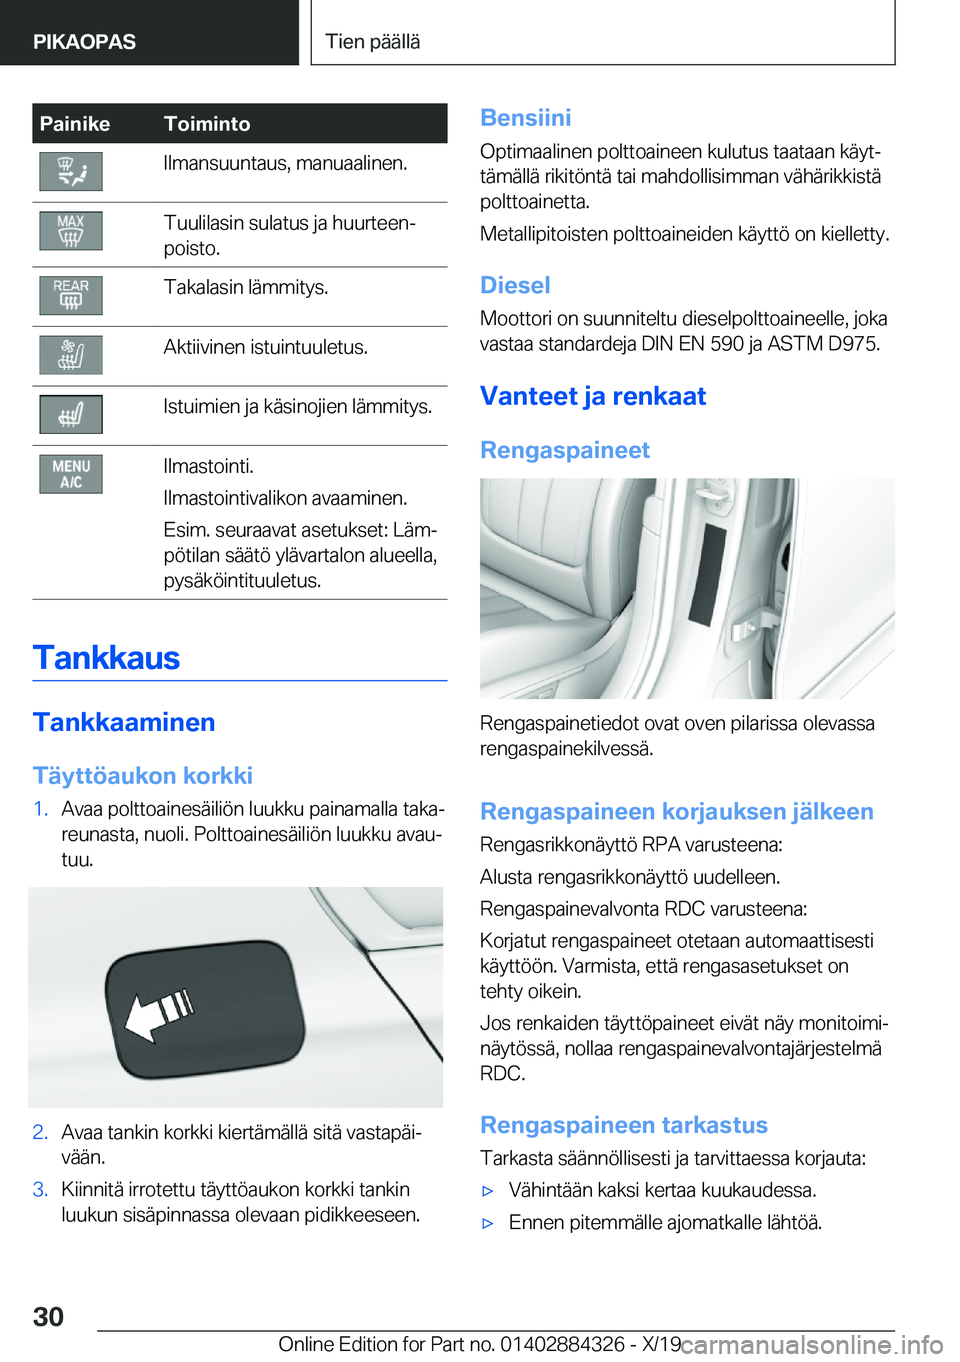 BMW 8 SERIES GRAN COUPE 2020  Omistajan Käsikirja (in Finnish) �P�a�i�n�i�k�e�T�o�i�m�i�n�t�o�I�l�m�a�n�s�u�u�n�t�a�u�s�,��m�a�n�u�a�a�l�i�n�e�n�.�T�u�u�l�i�l�a�s�i�n��s�u�l�a�t�u�s��j�a��h�u�u�r�t�e�e�nj
�p�o�i�s�t�o�.�T�a�k�a�l�a�s�i�n��l�